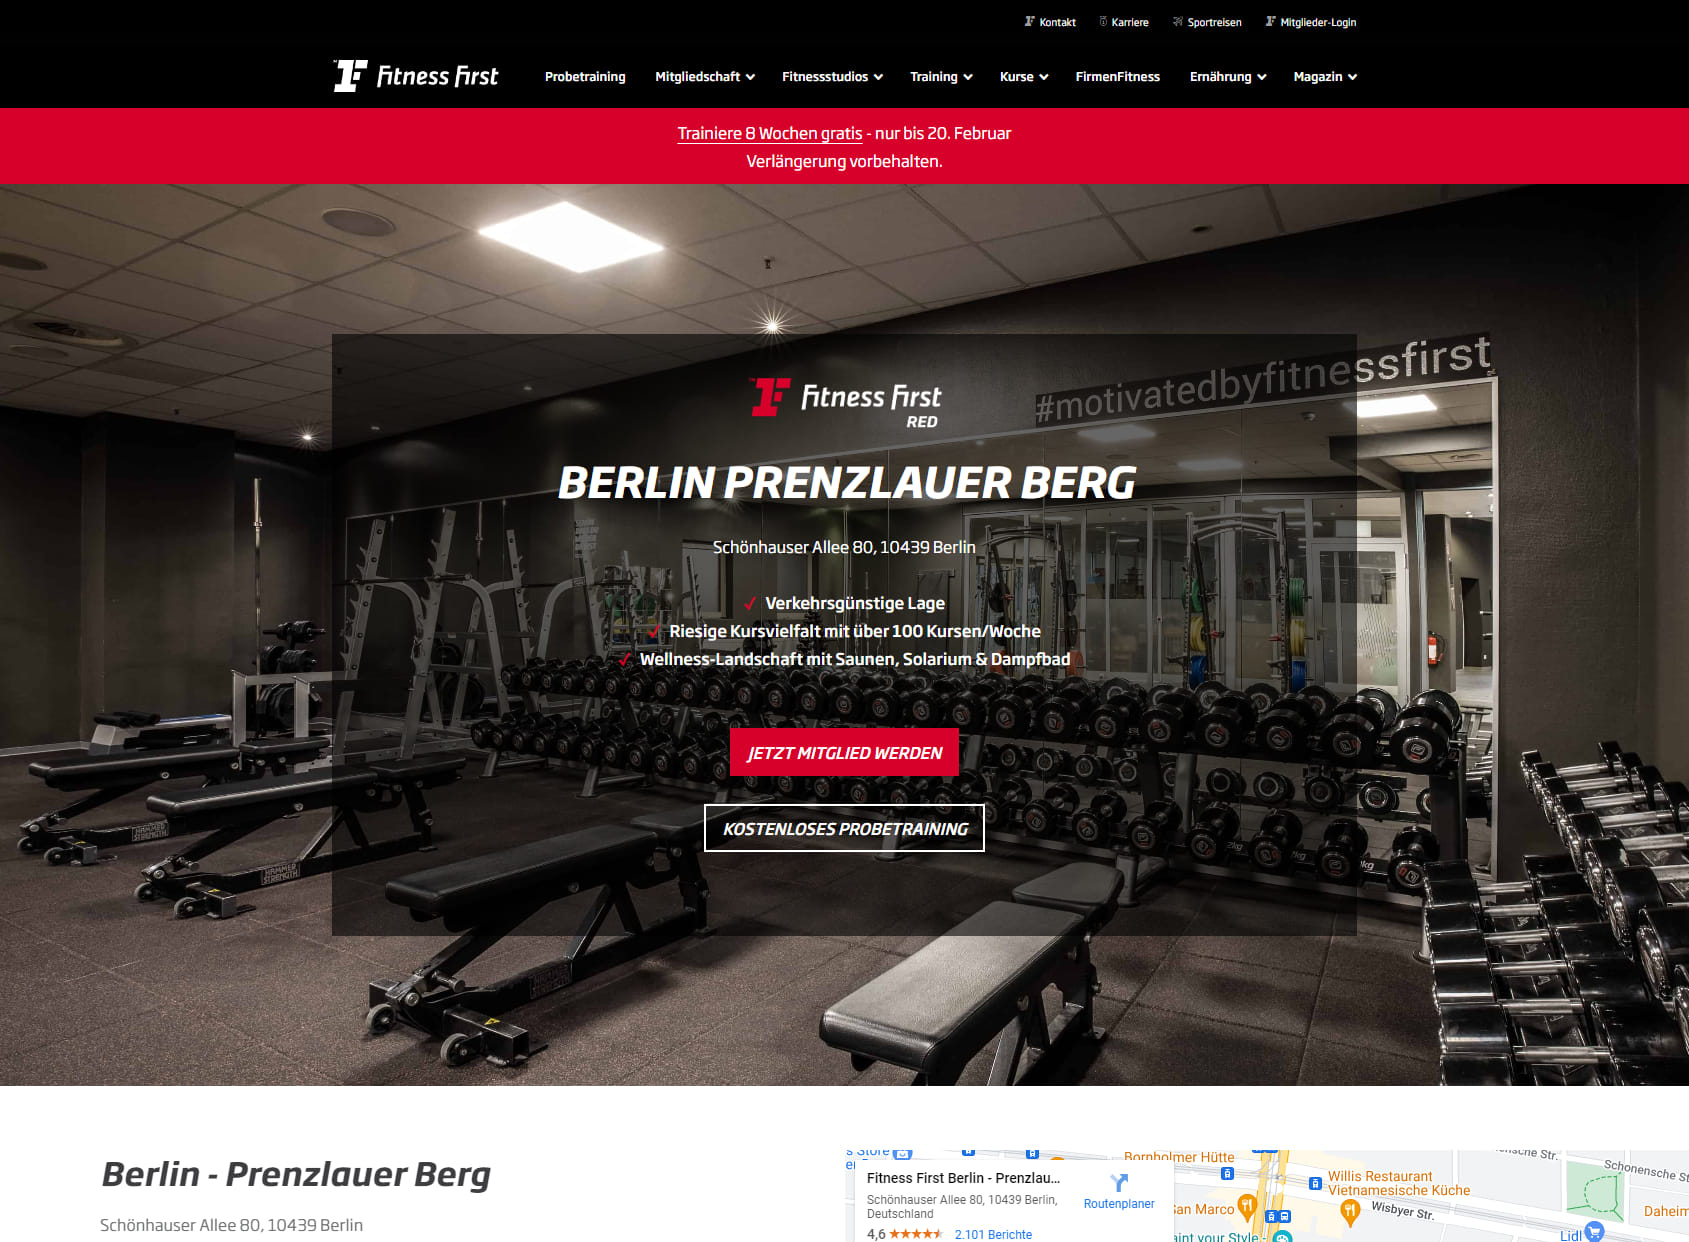 Fitness First Berlin - Prenzlauer Berg